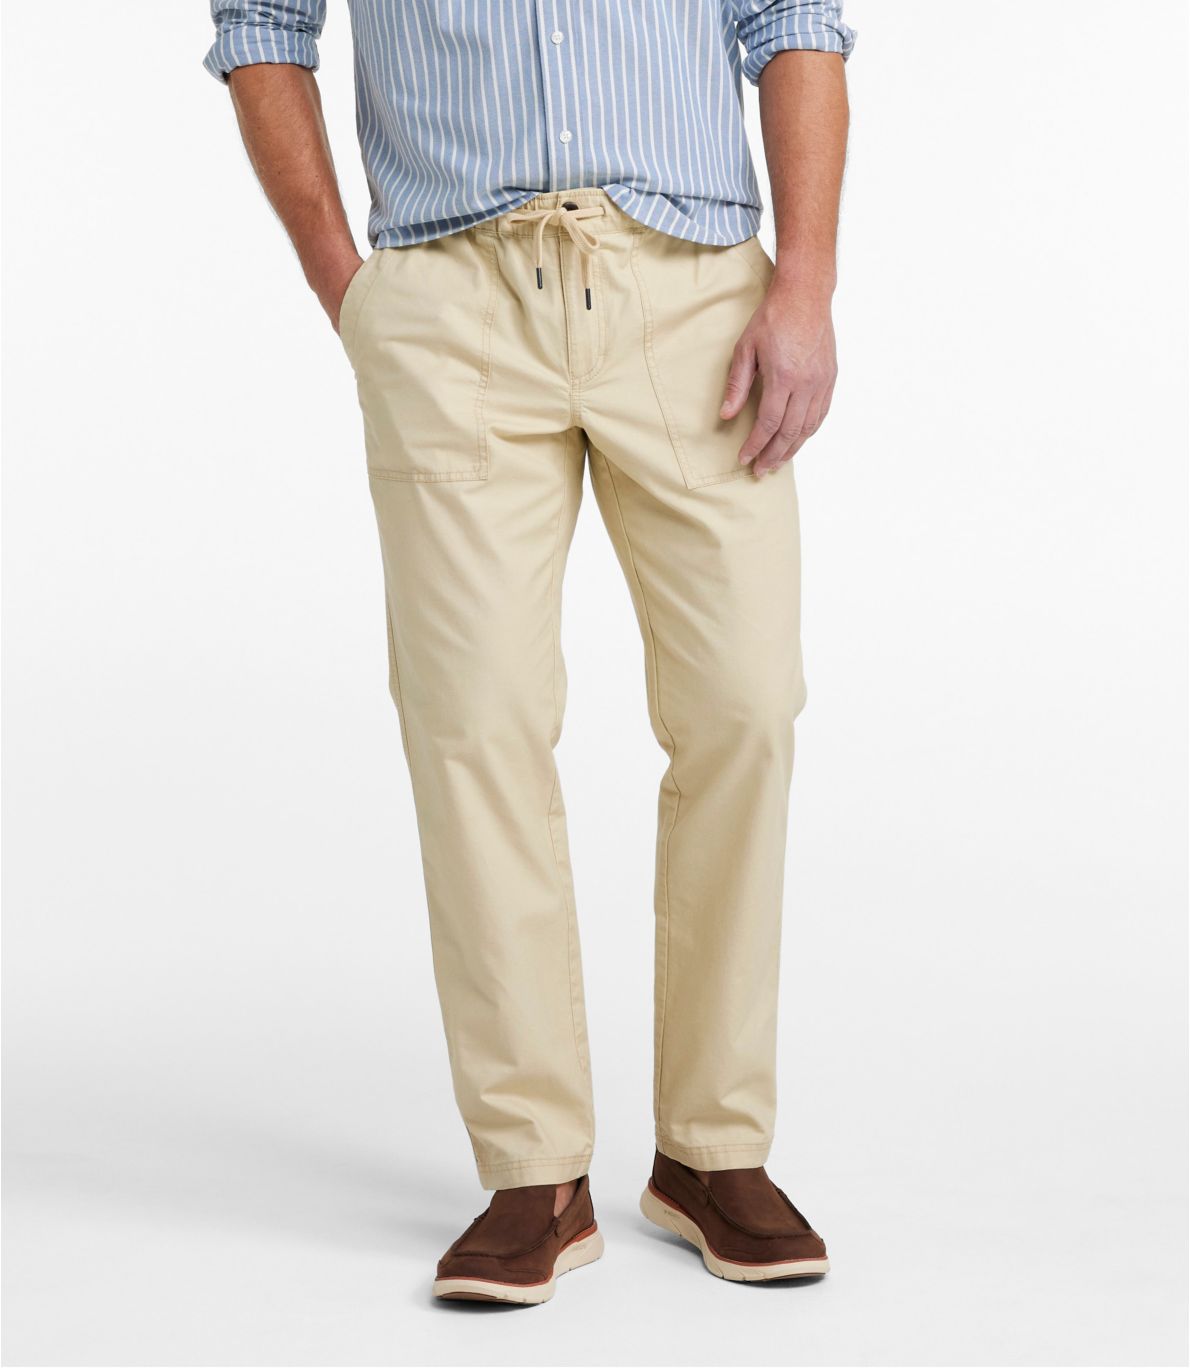 Men's Sunwashed Pants, Standard Fit